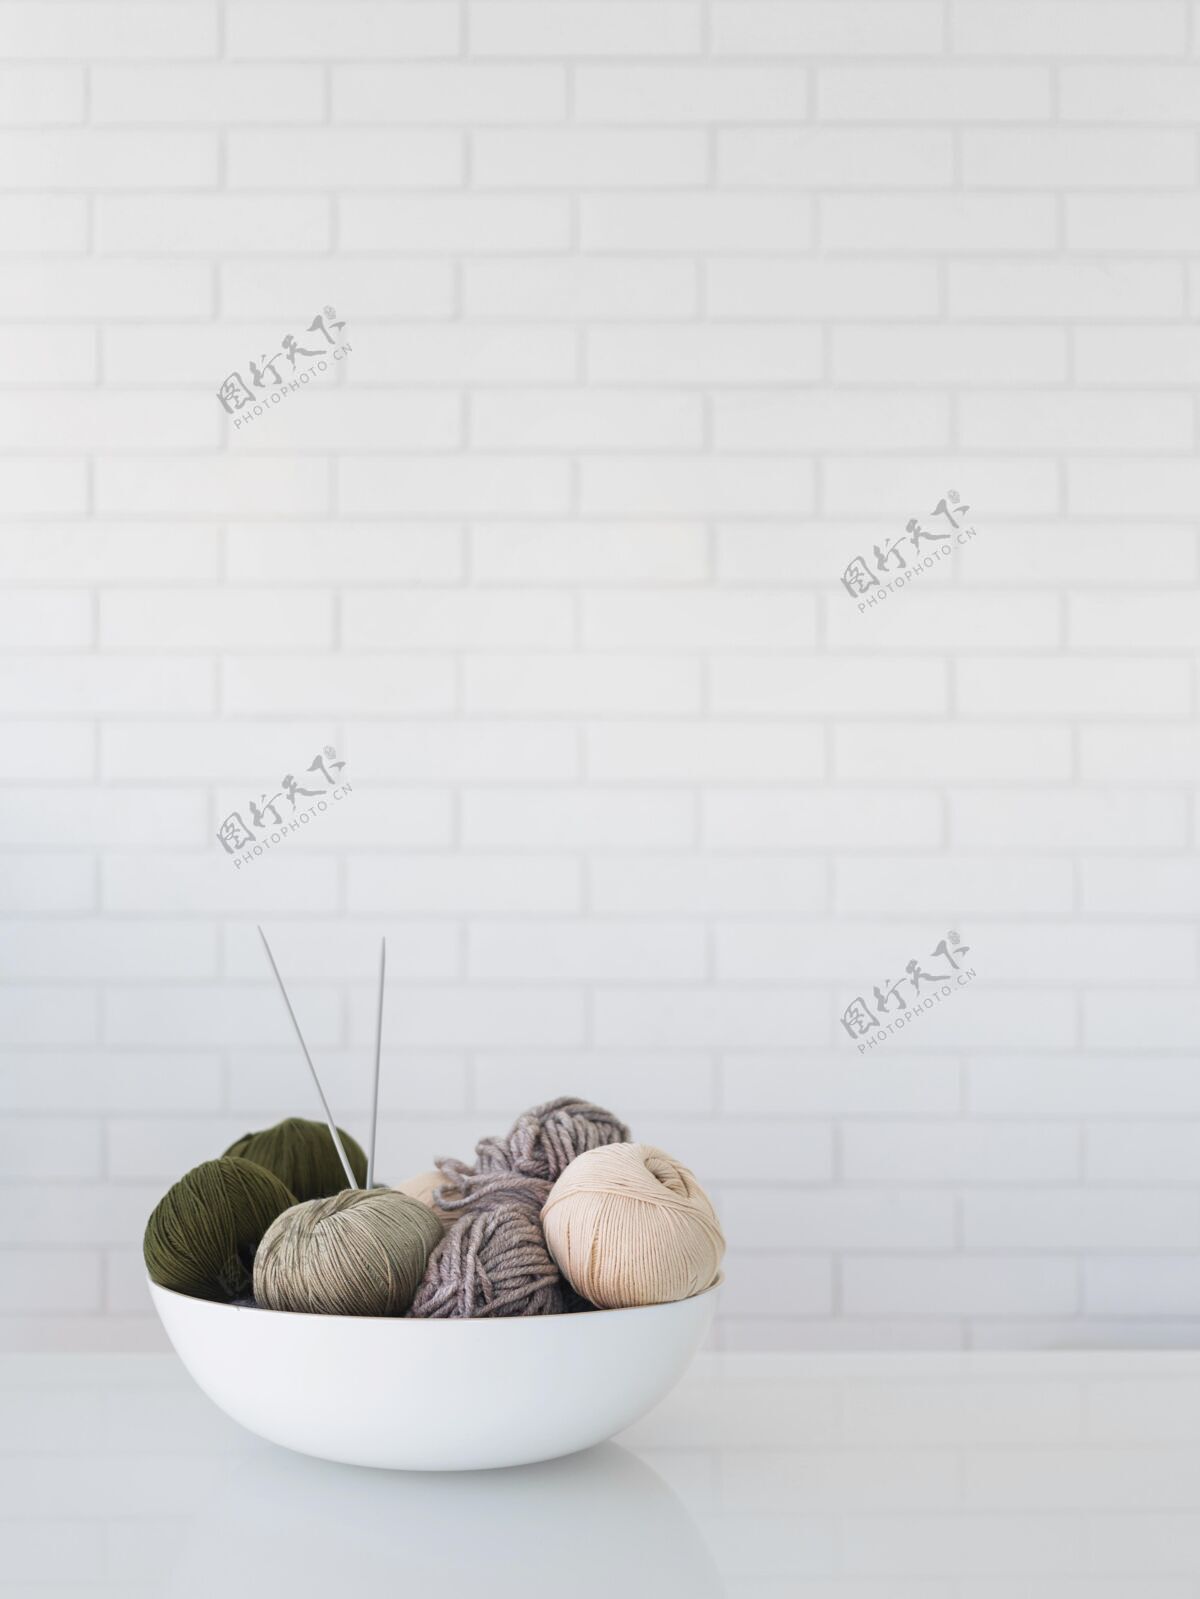 针织用毛线编织的碗爱好纺织品线